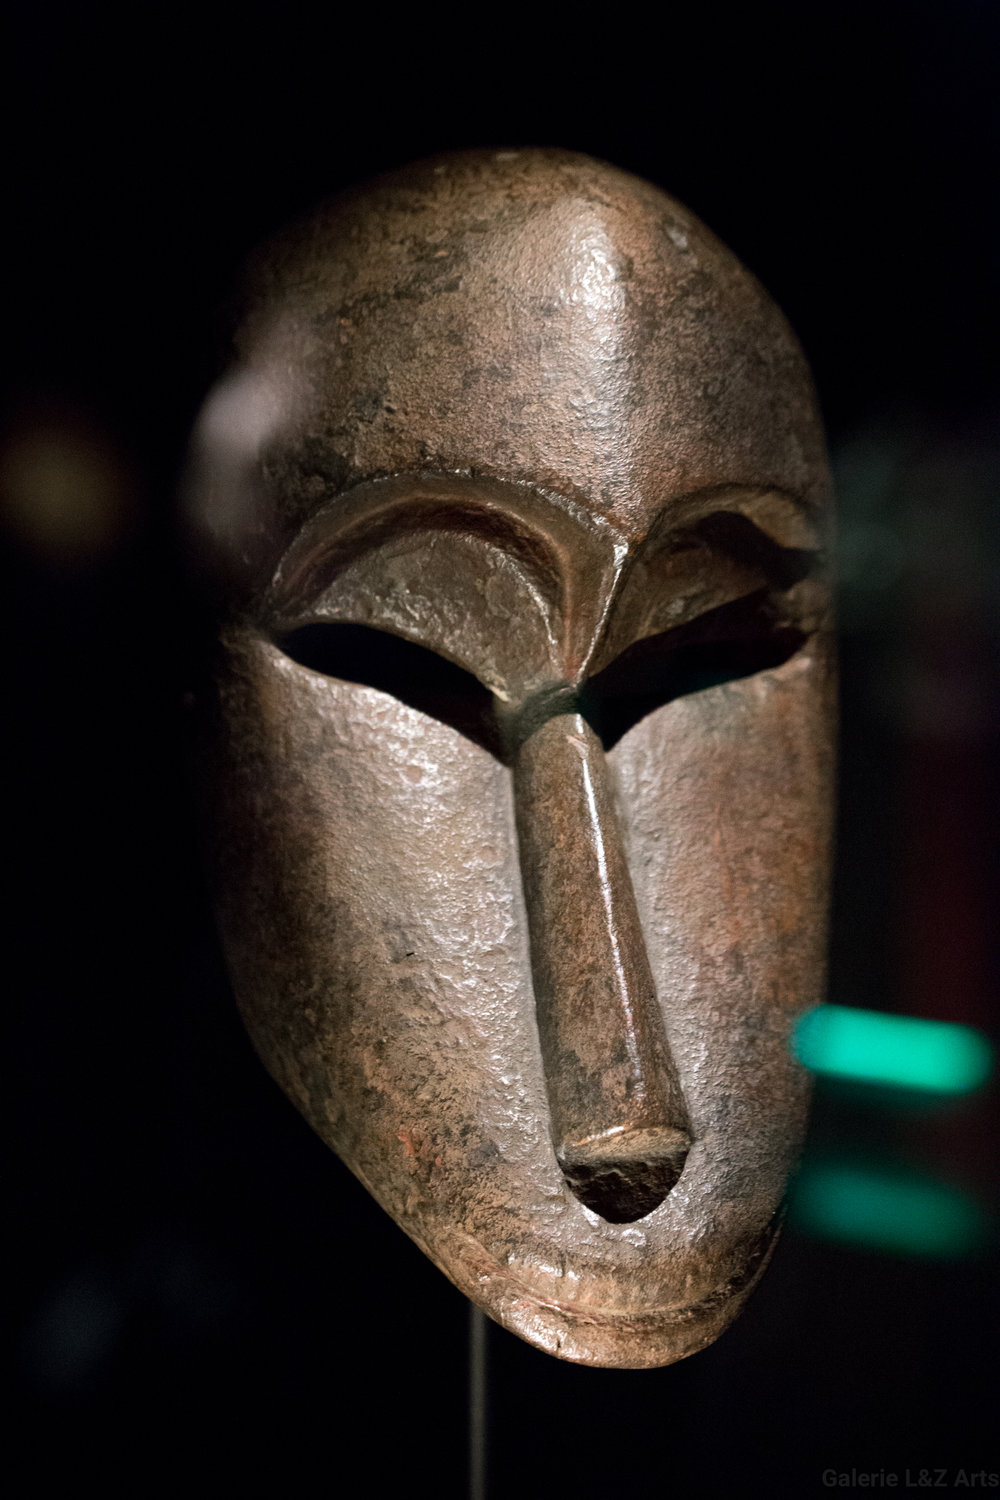 exposition-masque-art-tribal-africain-musee-quai-branly-belgique-galerie-lz-arts-liege-cite-miroir-oceanie-asie-japon-amerique-art-premier-nepal-43.jpg